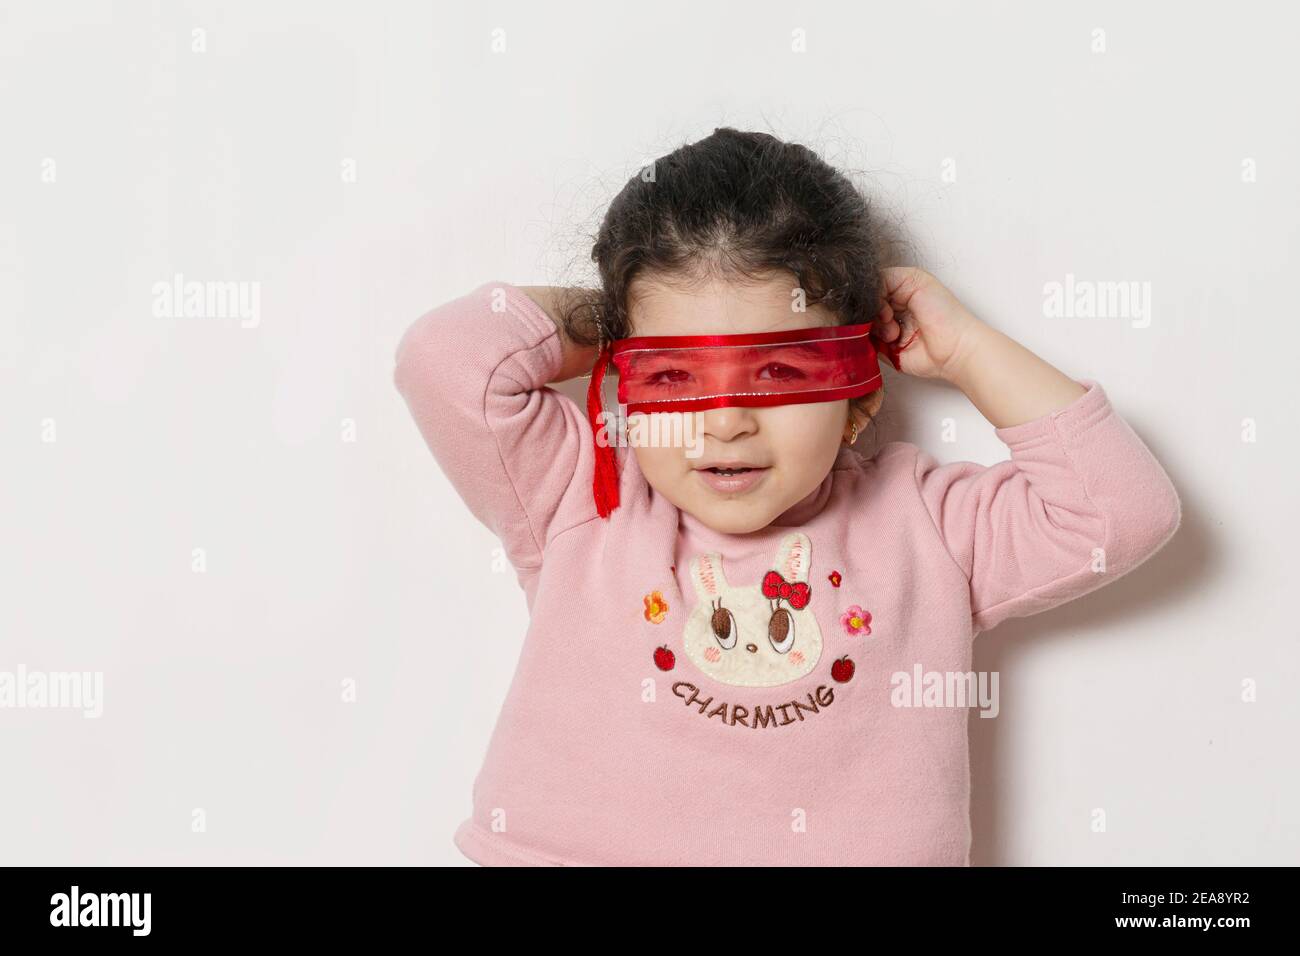 Kleines Mädchen bedeckte ihre Augen mit einem roten Band, Superhelden Konzept Stockfoto